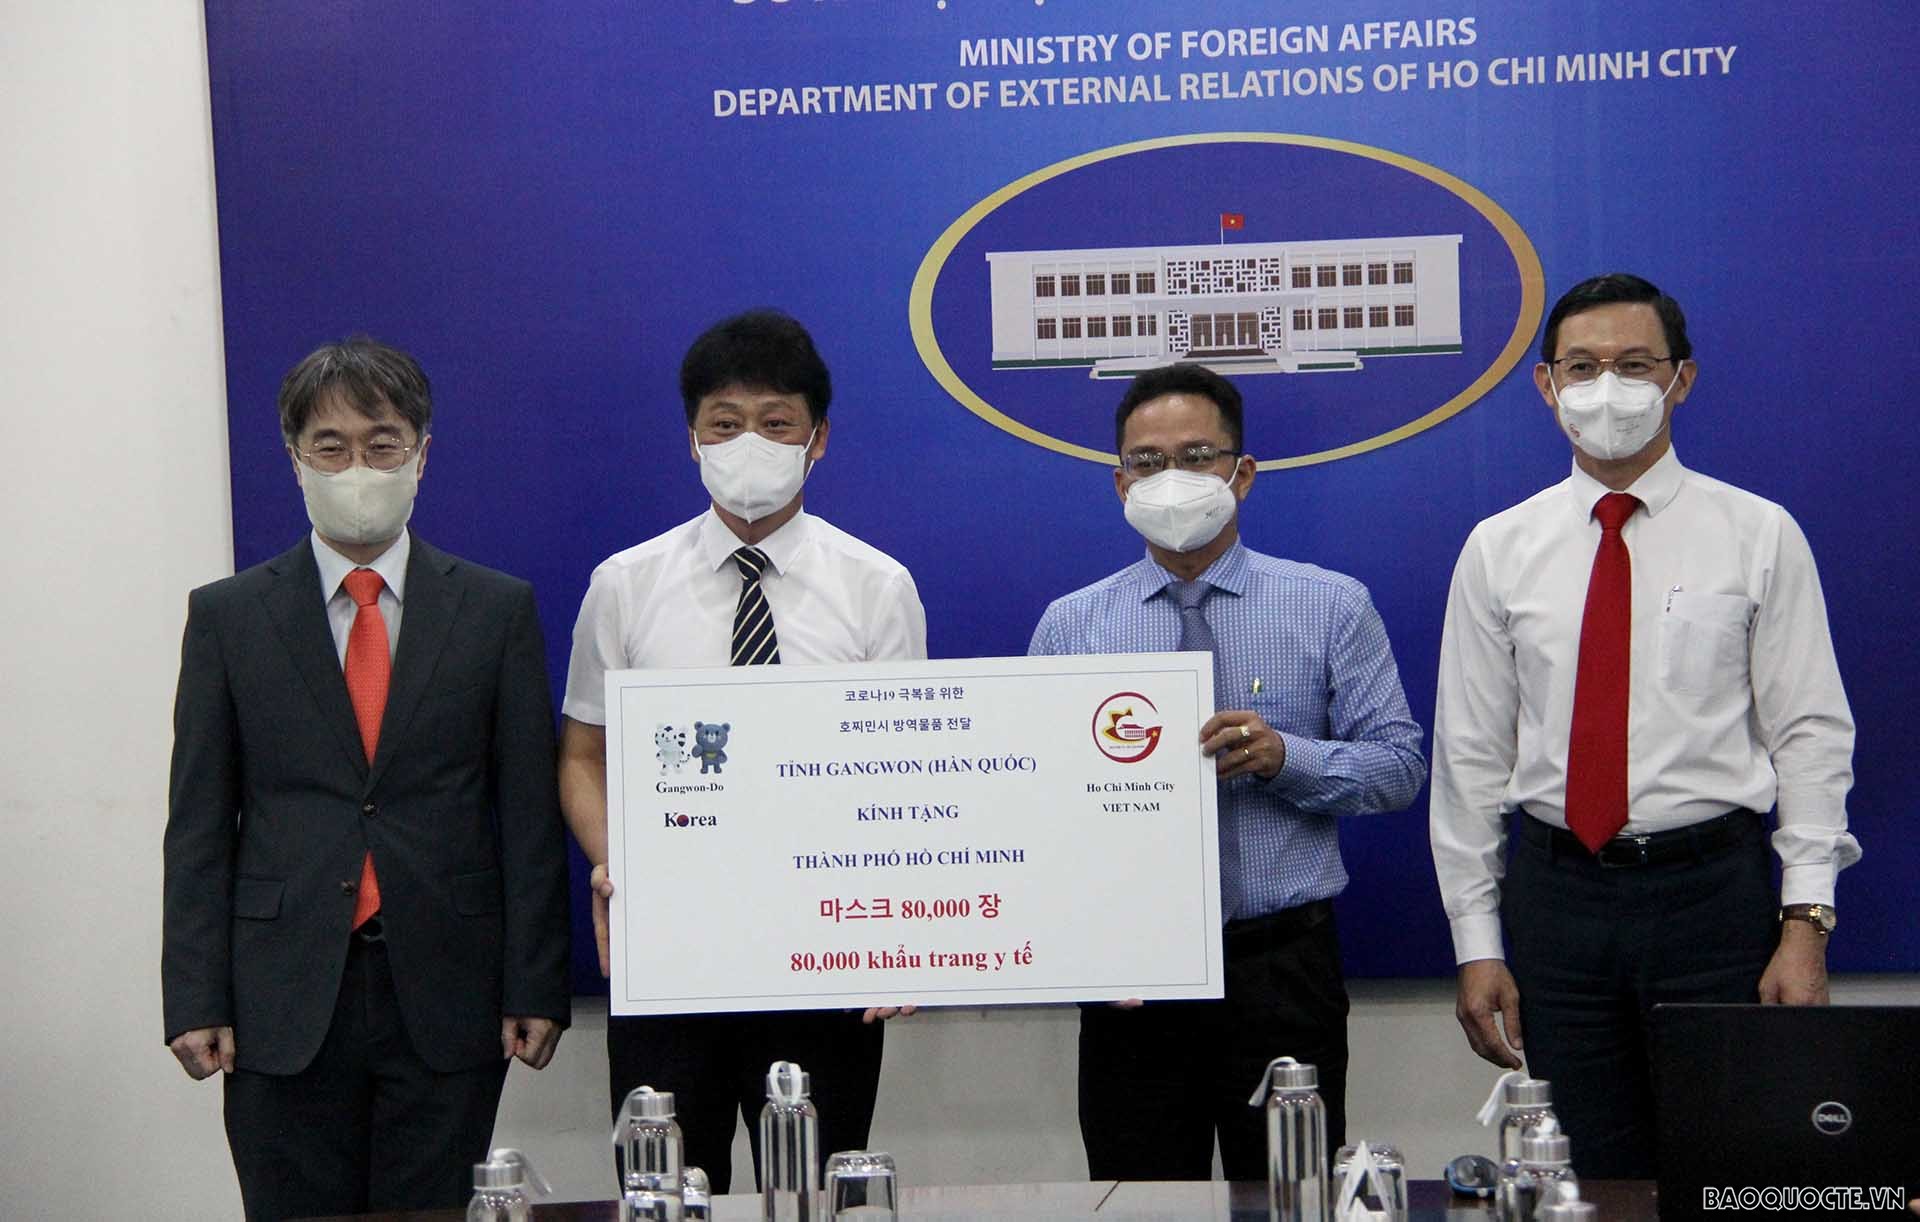 Tỉnh Gangwon, Hàn Quốc trao tặng 80.000 khẩu trang y tế phòng chống dịch Covid-19 cho TP. Hồ Chí Minh.